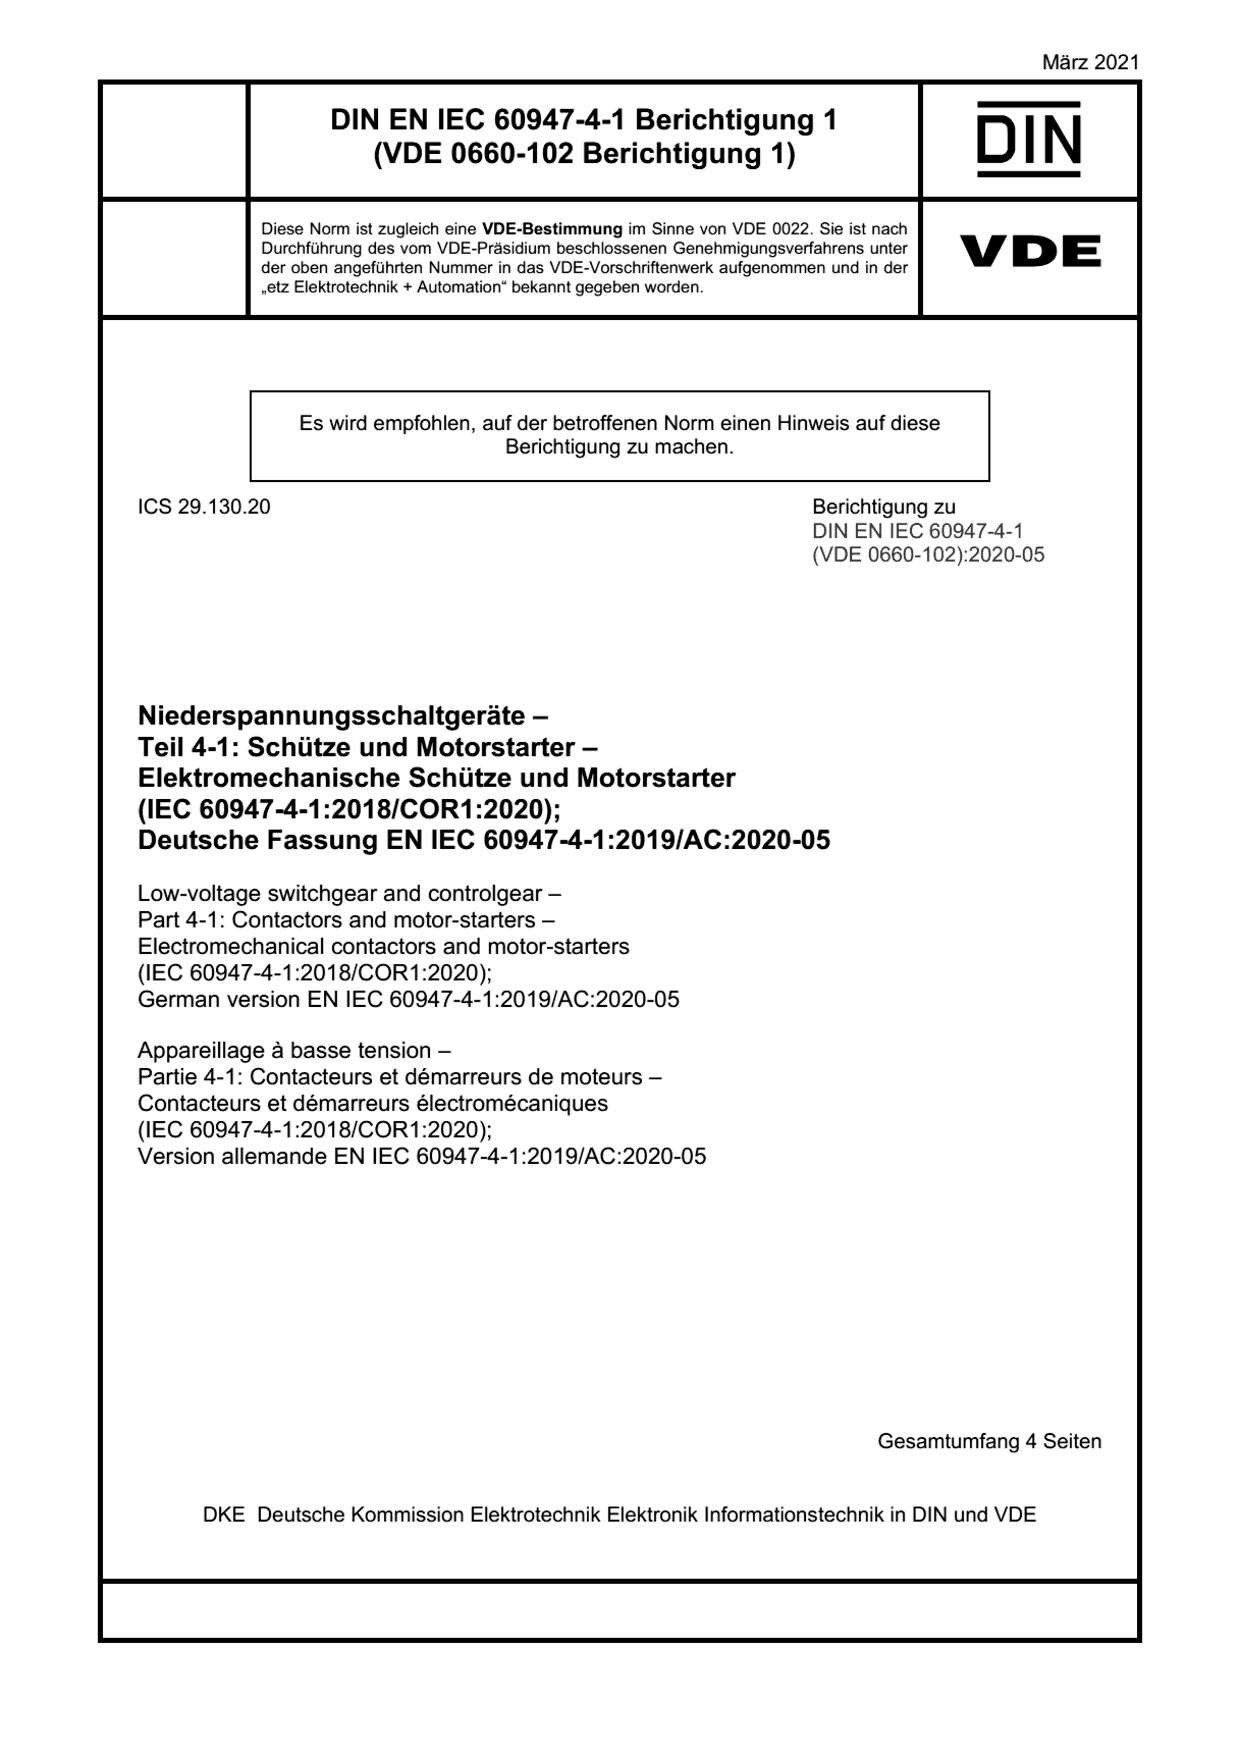 DIN EN IEC 60947-4-1 Berichtigung 1:2021